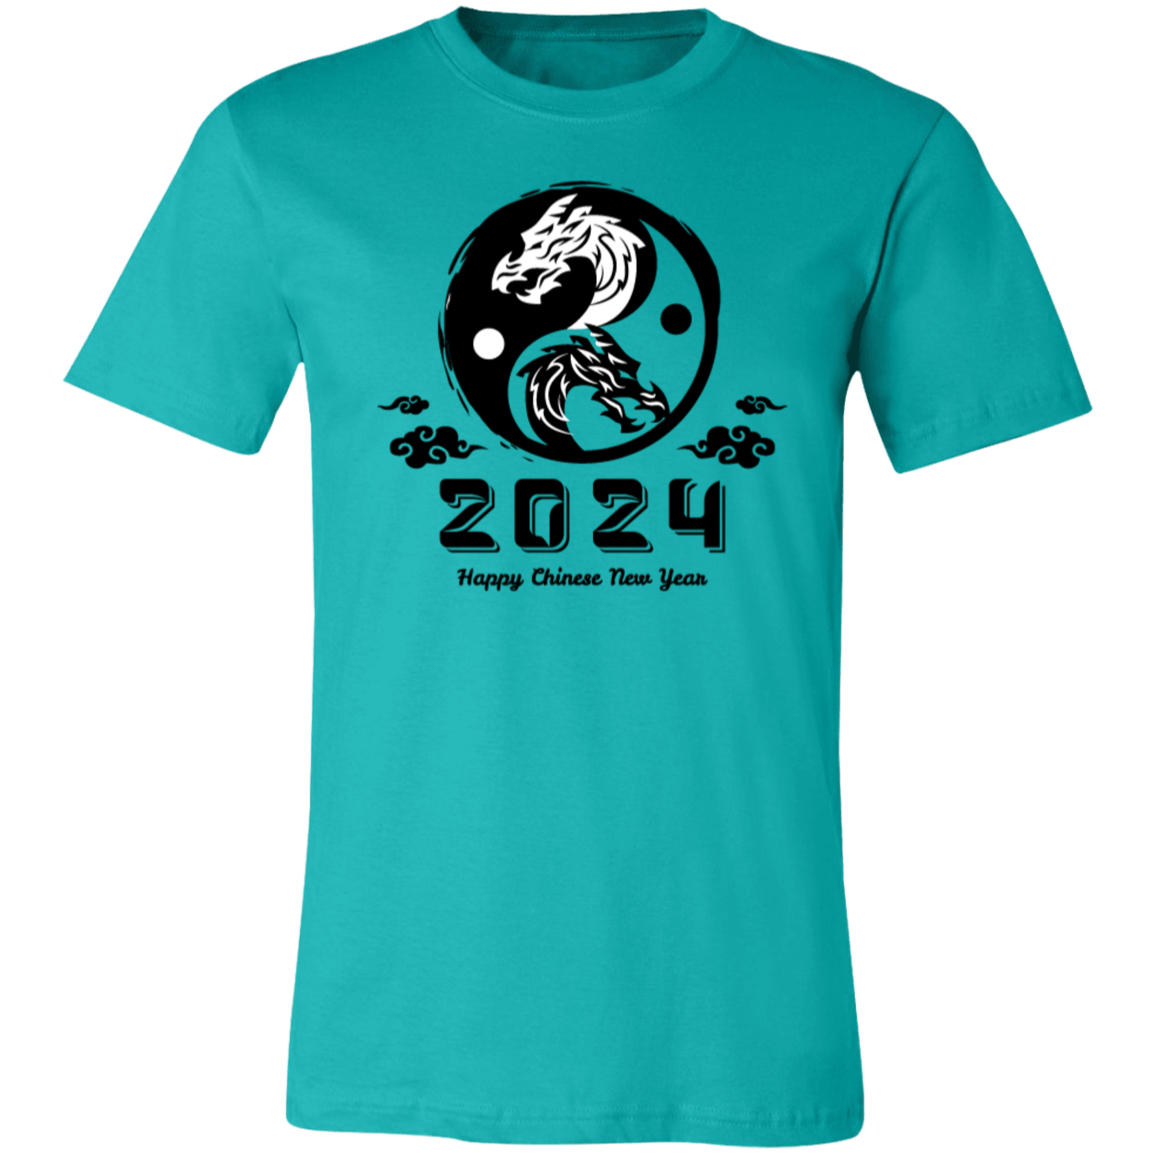 2024 Happy Chinese New Year Shirt